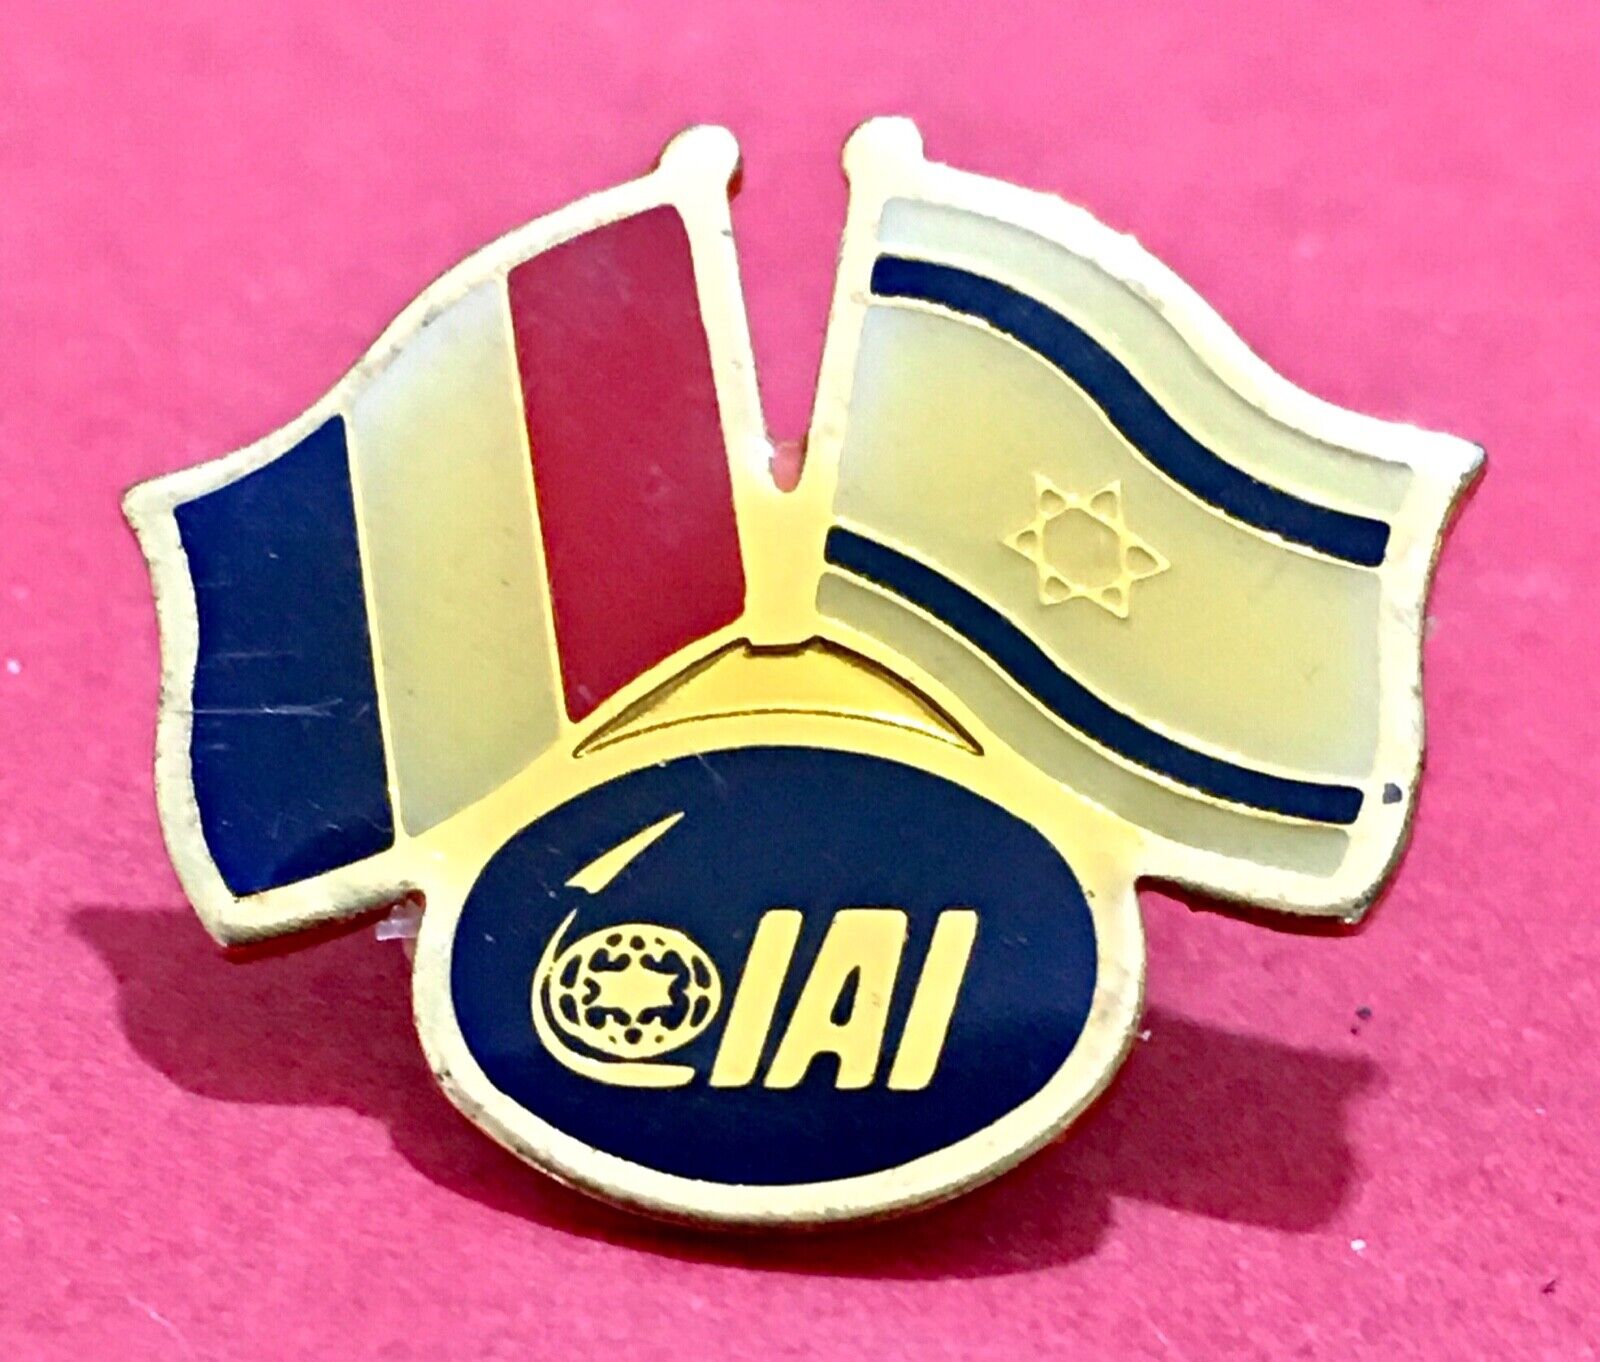 Vintage Pin Badge Israel Aerospace Industries, IAI Israel - France.